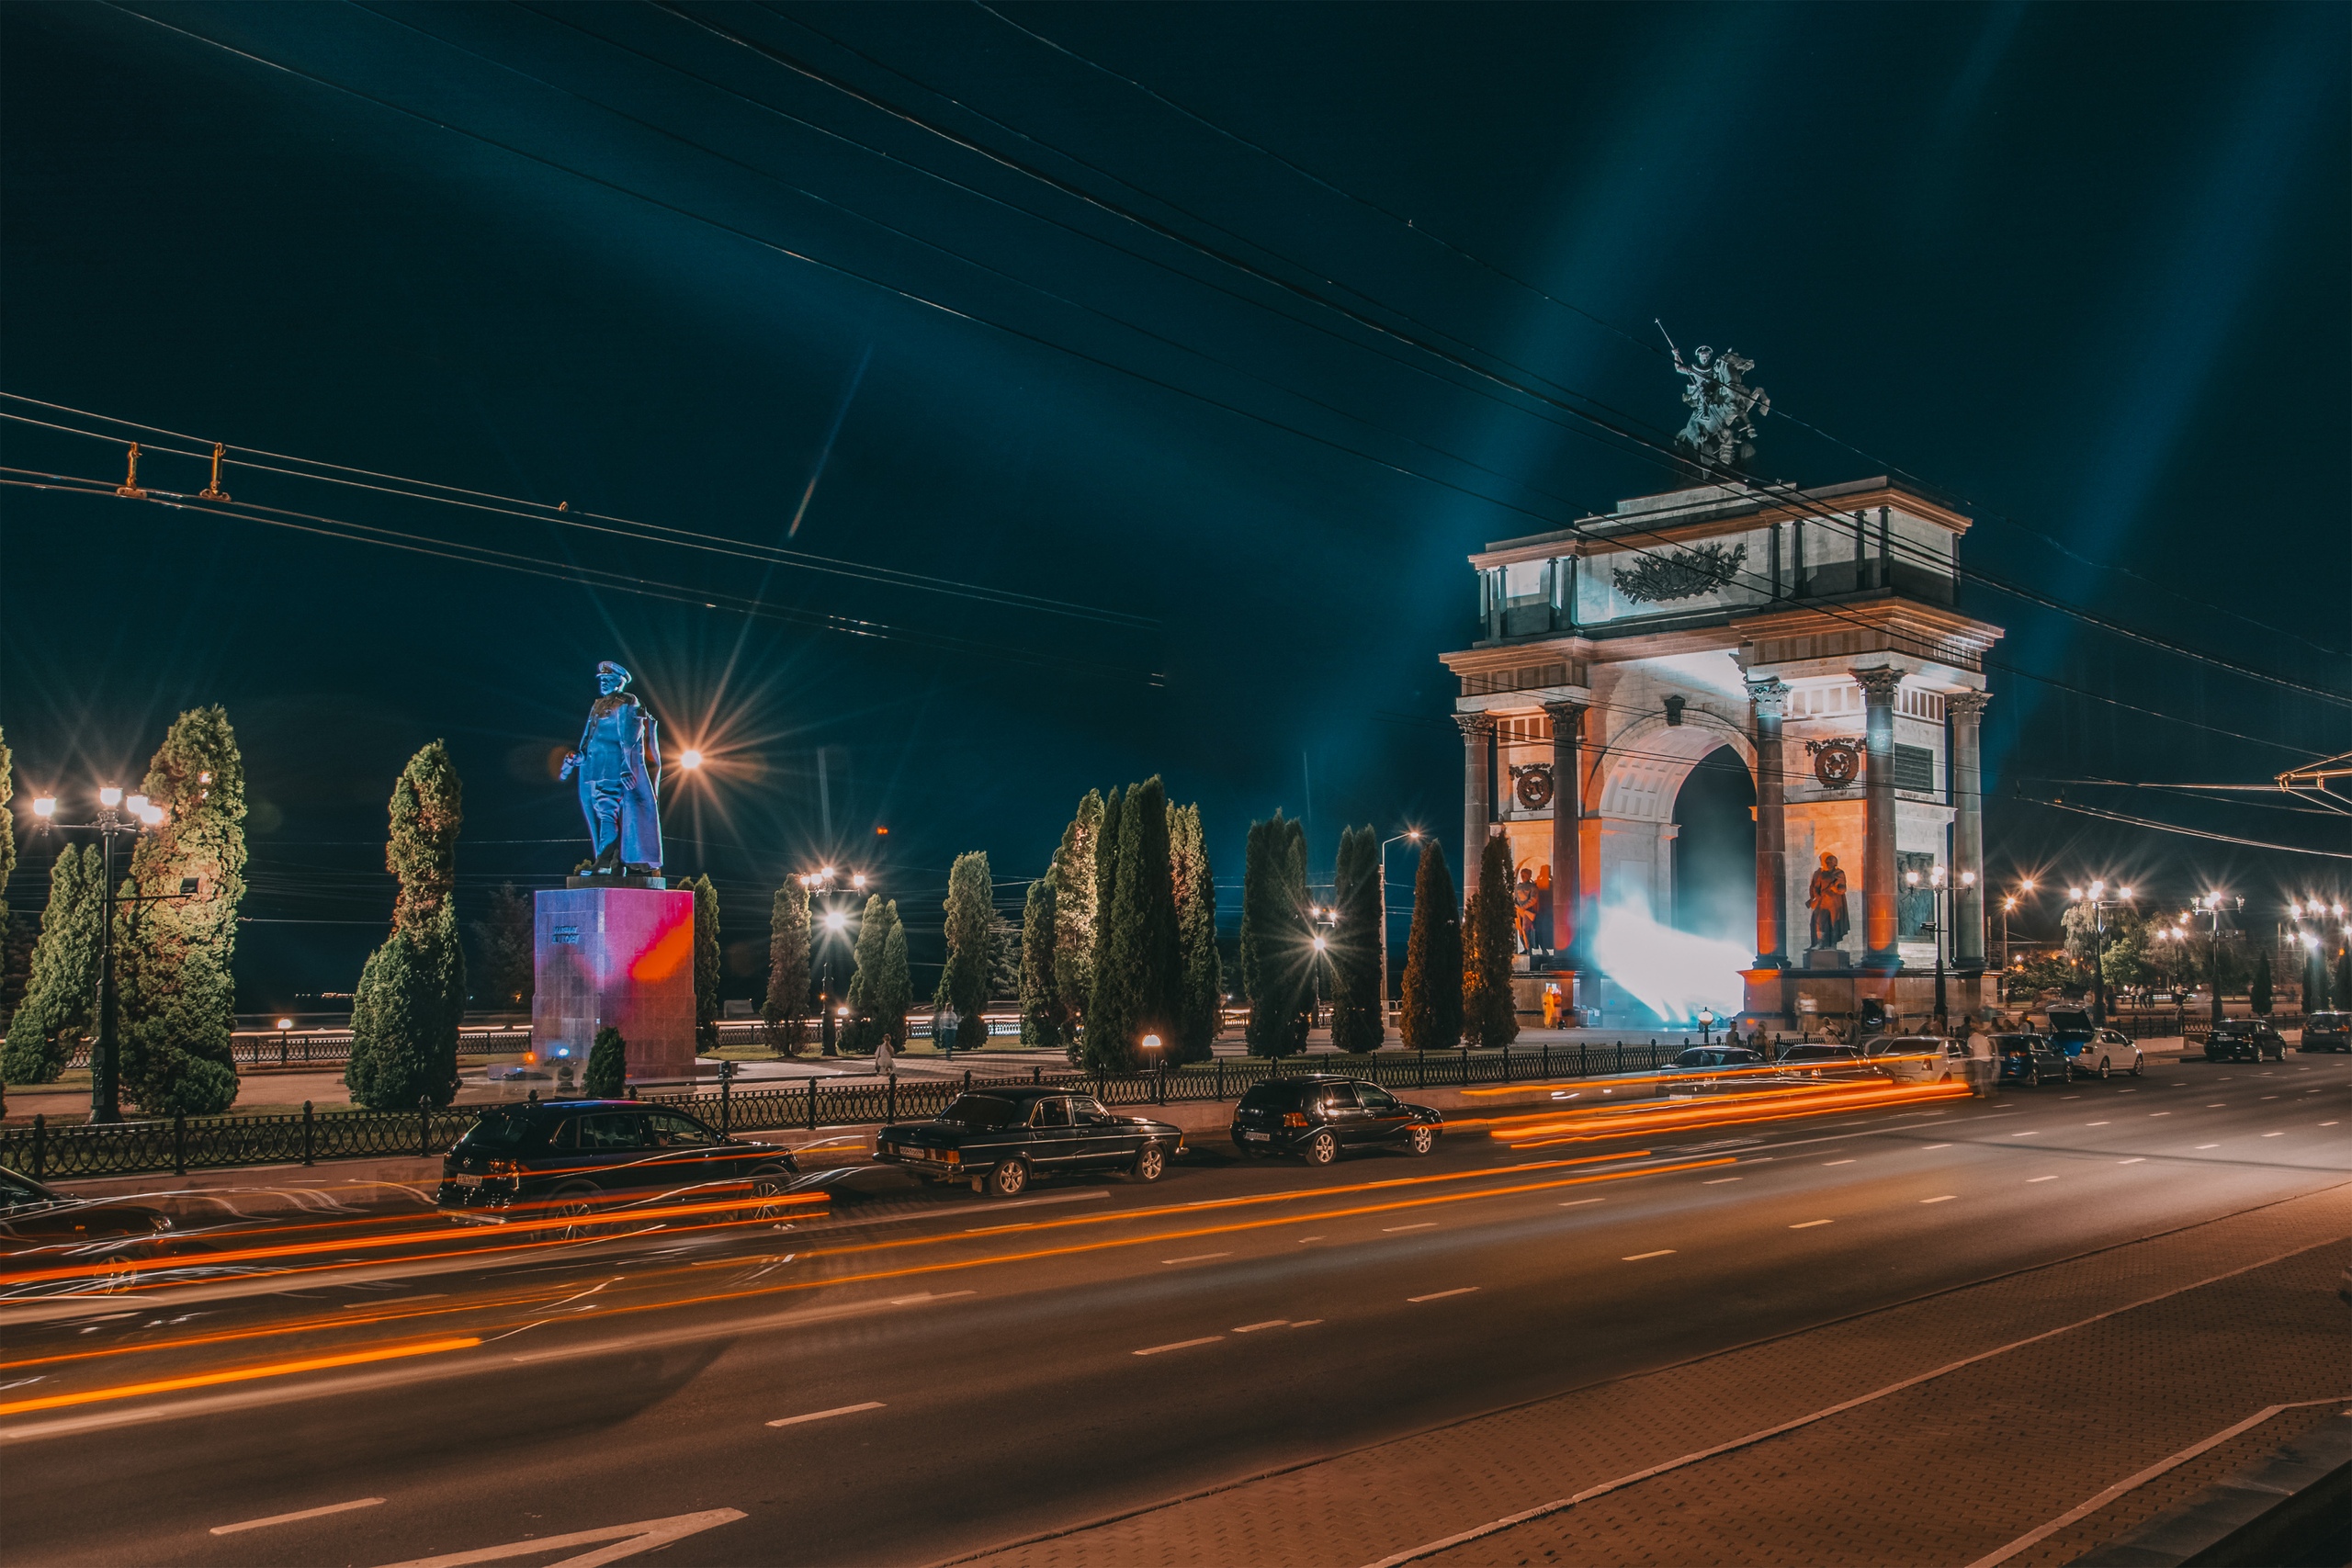 Триумфальная арка, Курск, июнь 2015